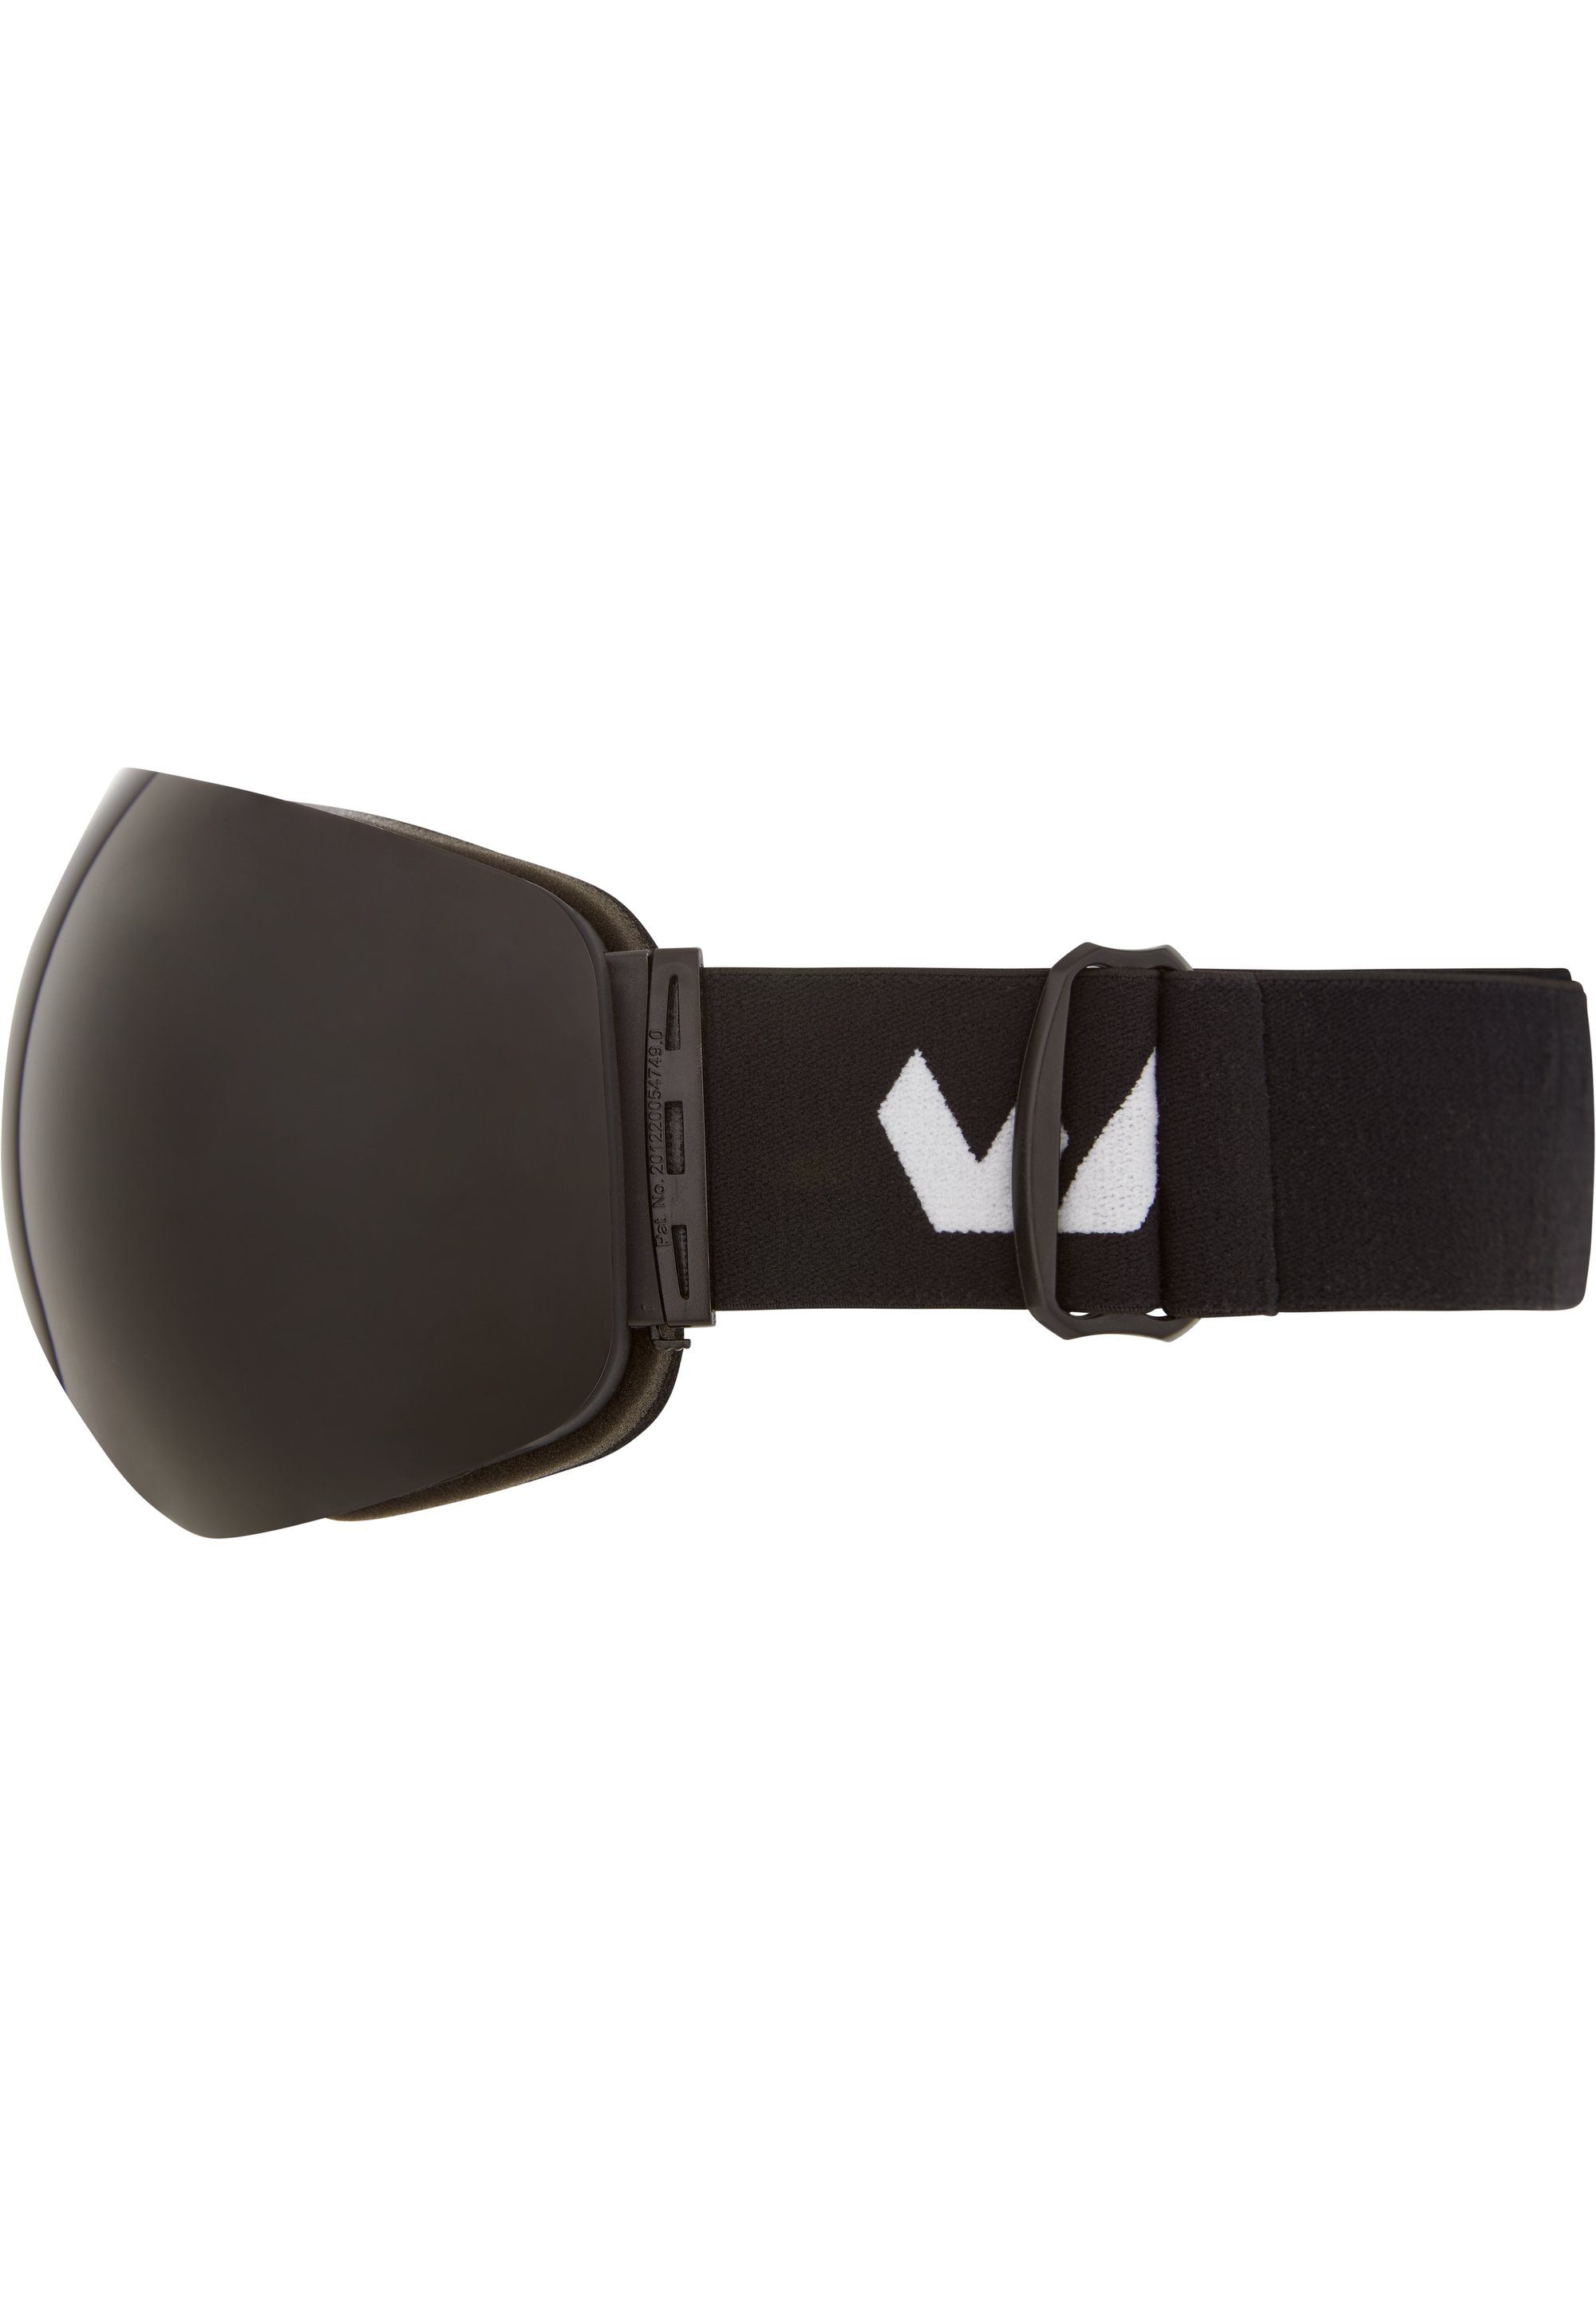 WHISTLER Skibrille WS6100, mit schwarz Anti-Fog-Beschichtung praktischer